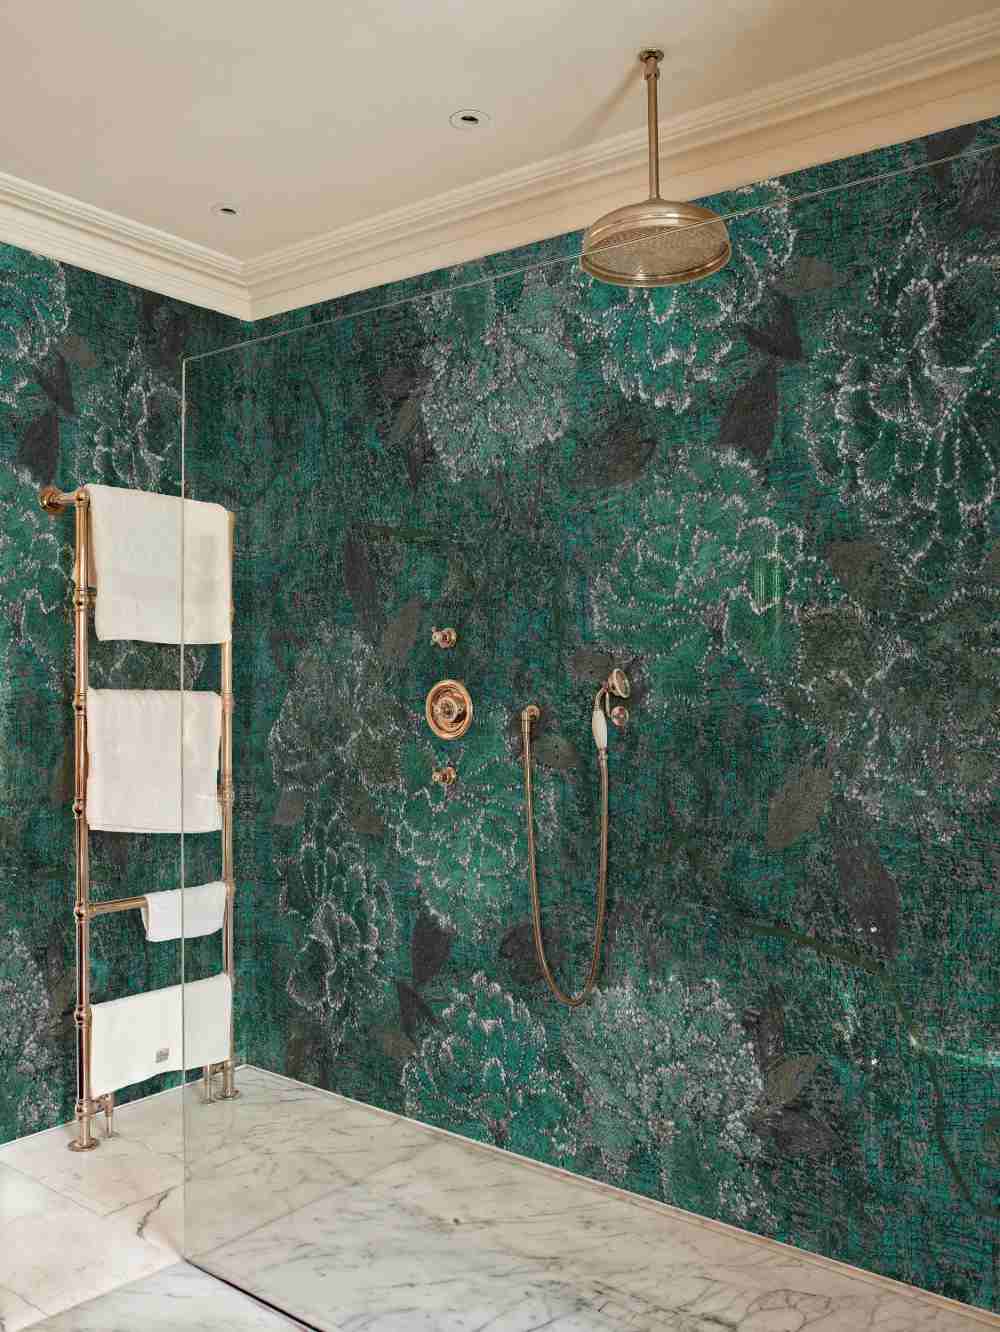 revestimento de parede verde com motivos florais em estilo retro como alternativa aos azulejos no banheiro com área de chuveiro